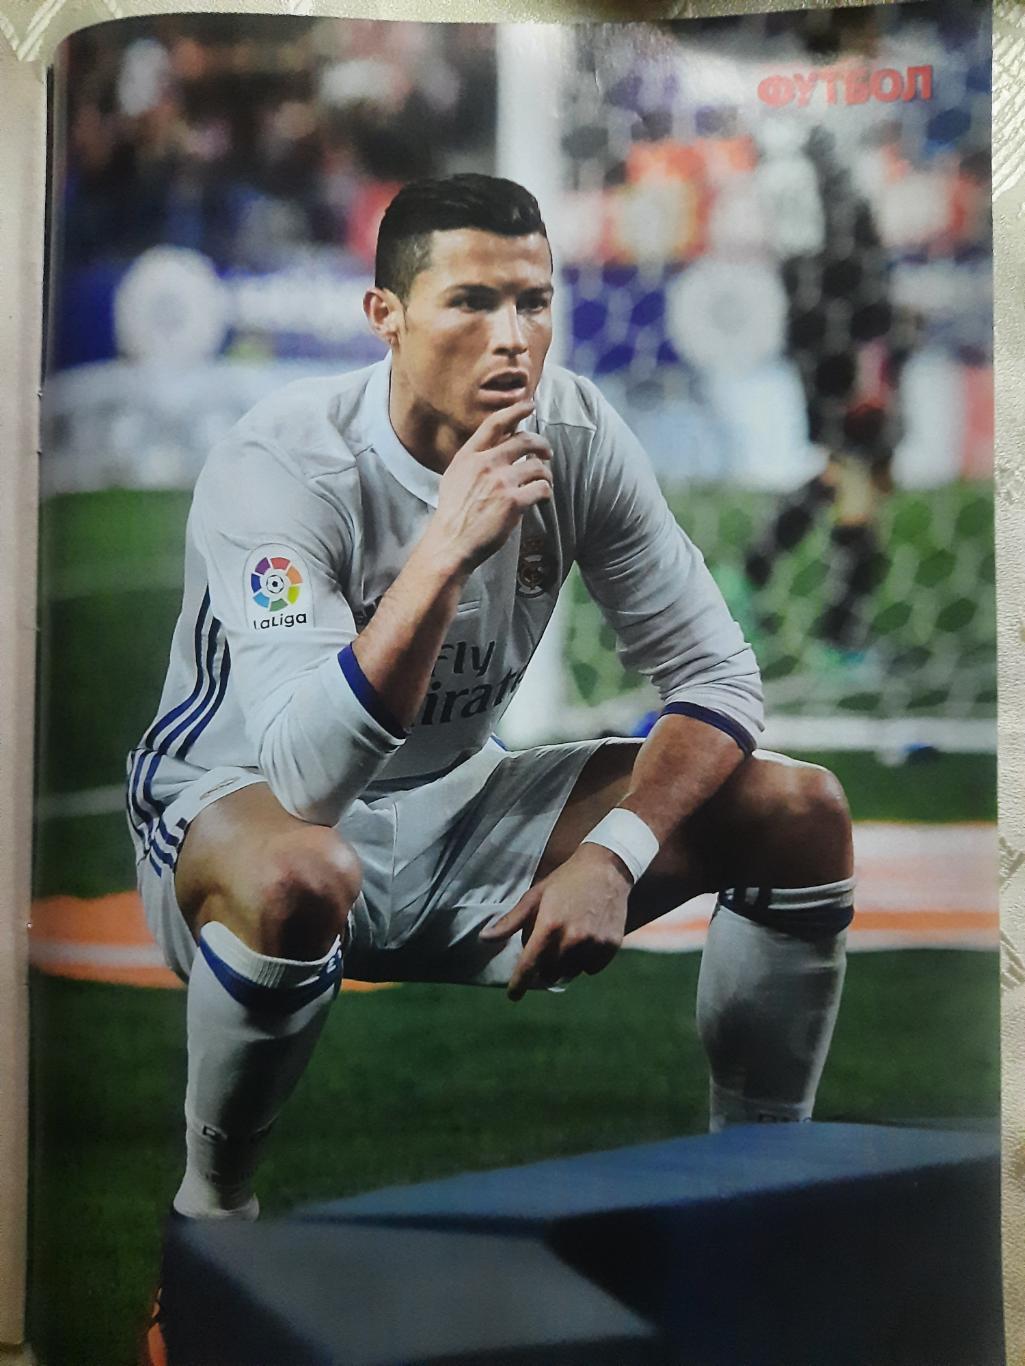 еженедельник Футбол #95 2016, постер: Месси, Роналду... 2